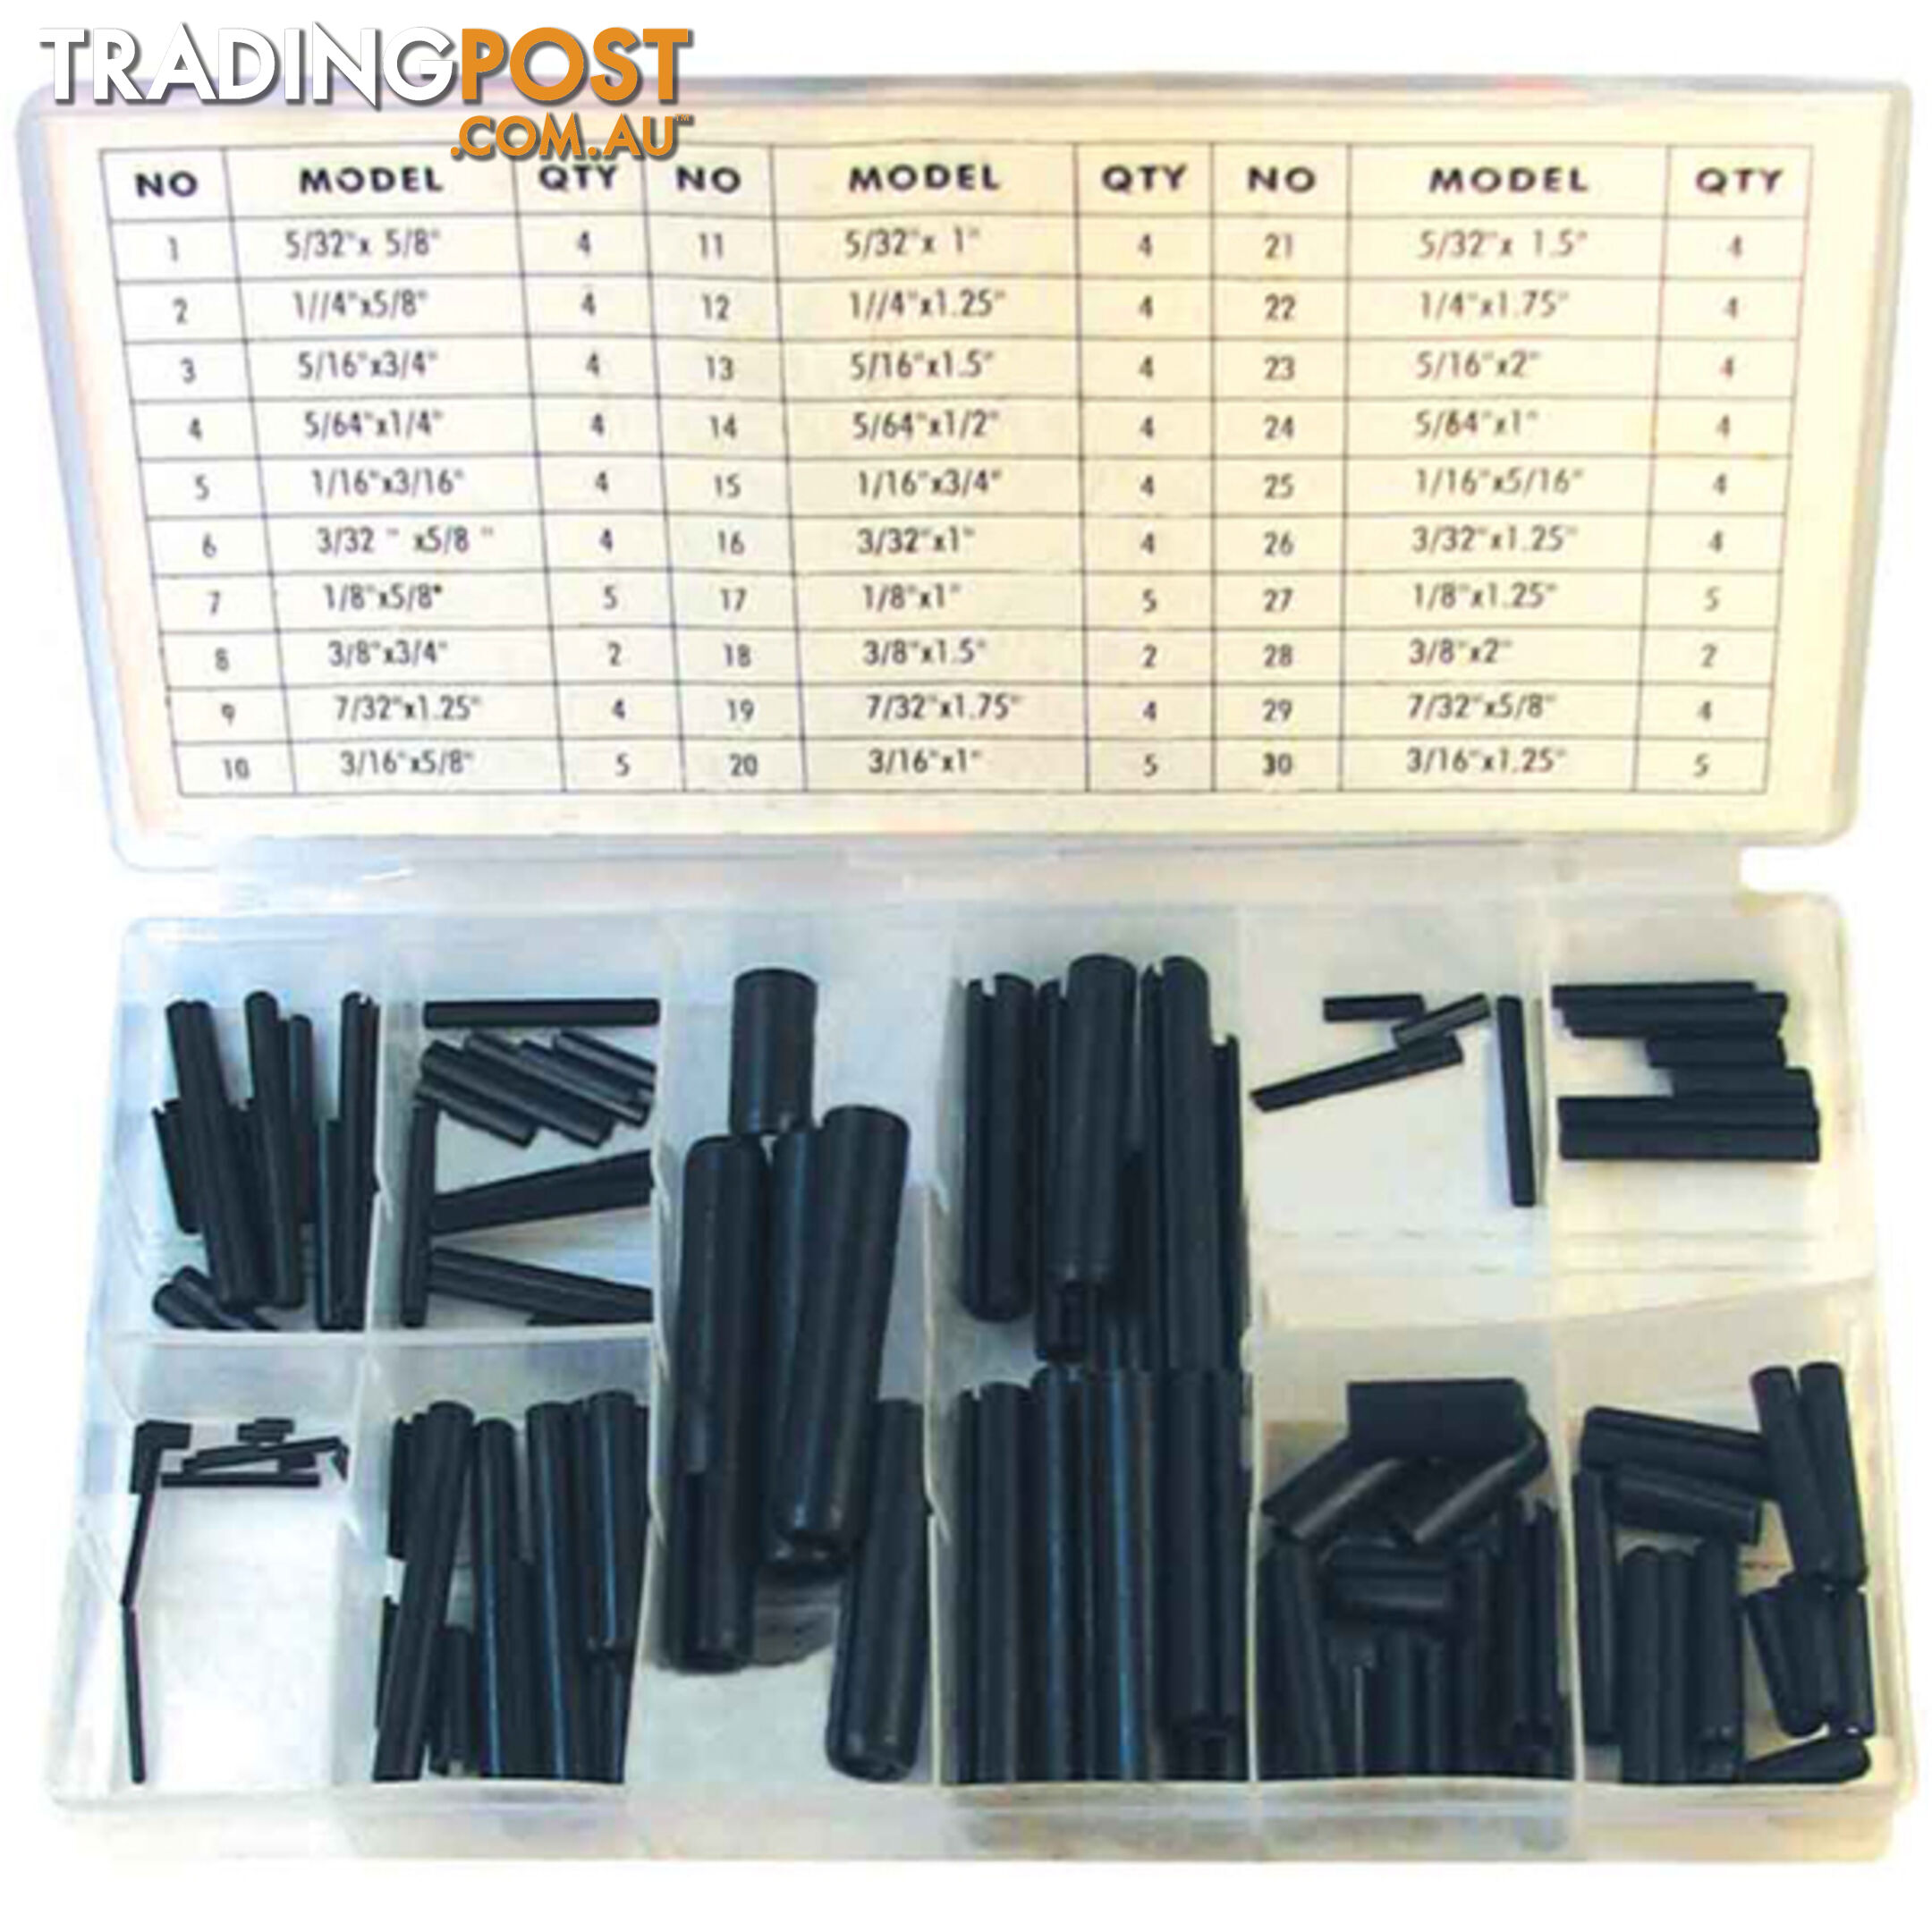 Roll Pin Assortment Kit 120pc SKU - RG2807